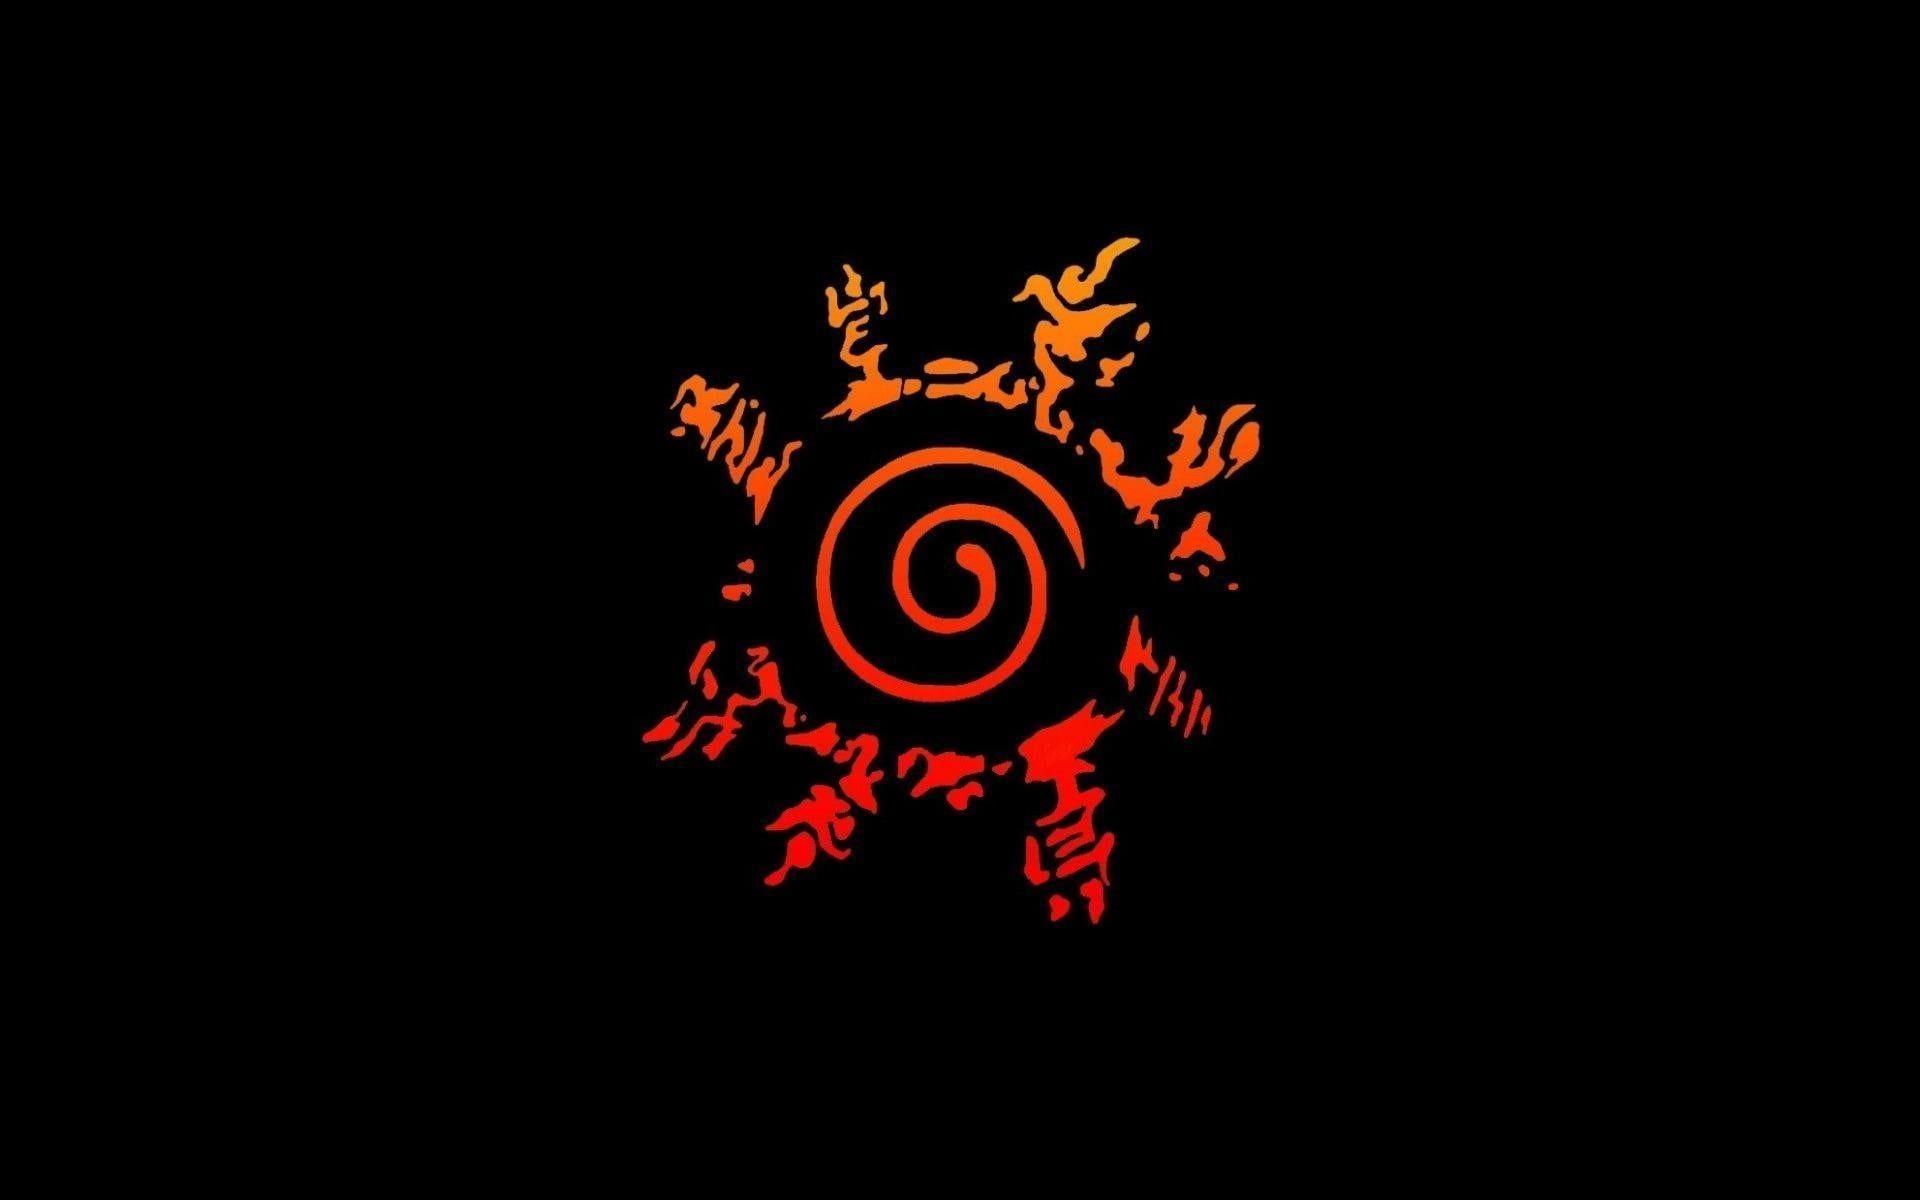 1920x1200 đỏ và cam Naruto Seal hình nền kỹ thuật số Naruto Shippuuden #anime #symbols #orange P #wallpaper #hdwallpaper #deskt.  Naruto hình nền, Naruto, Naruto art